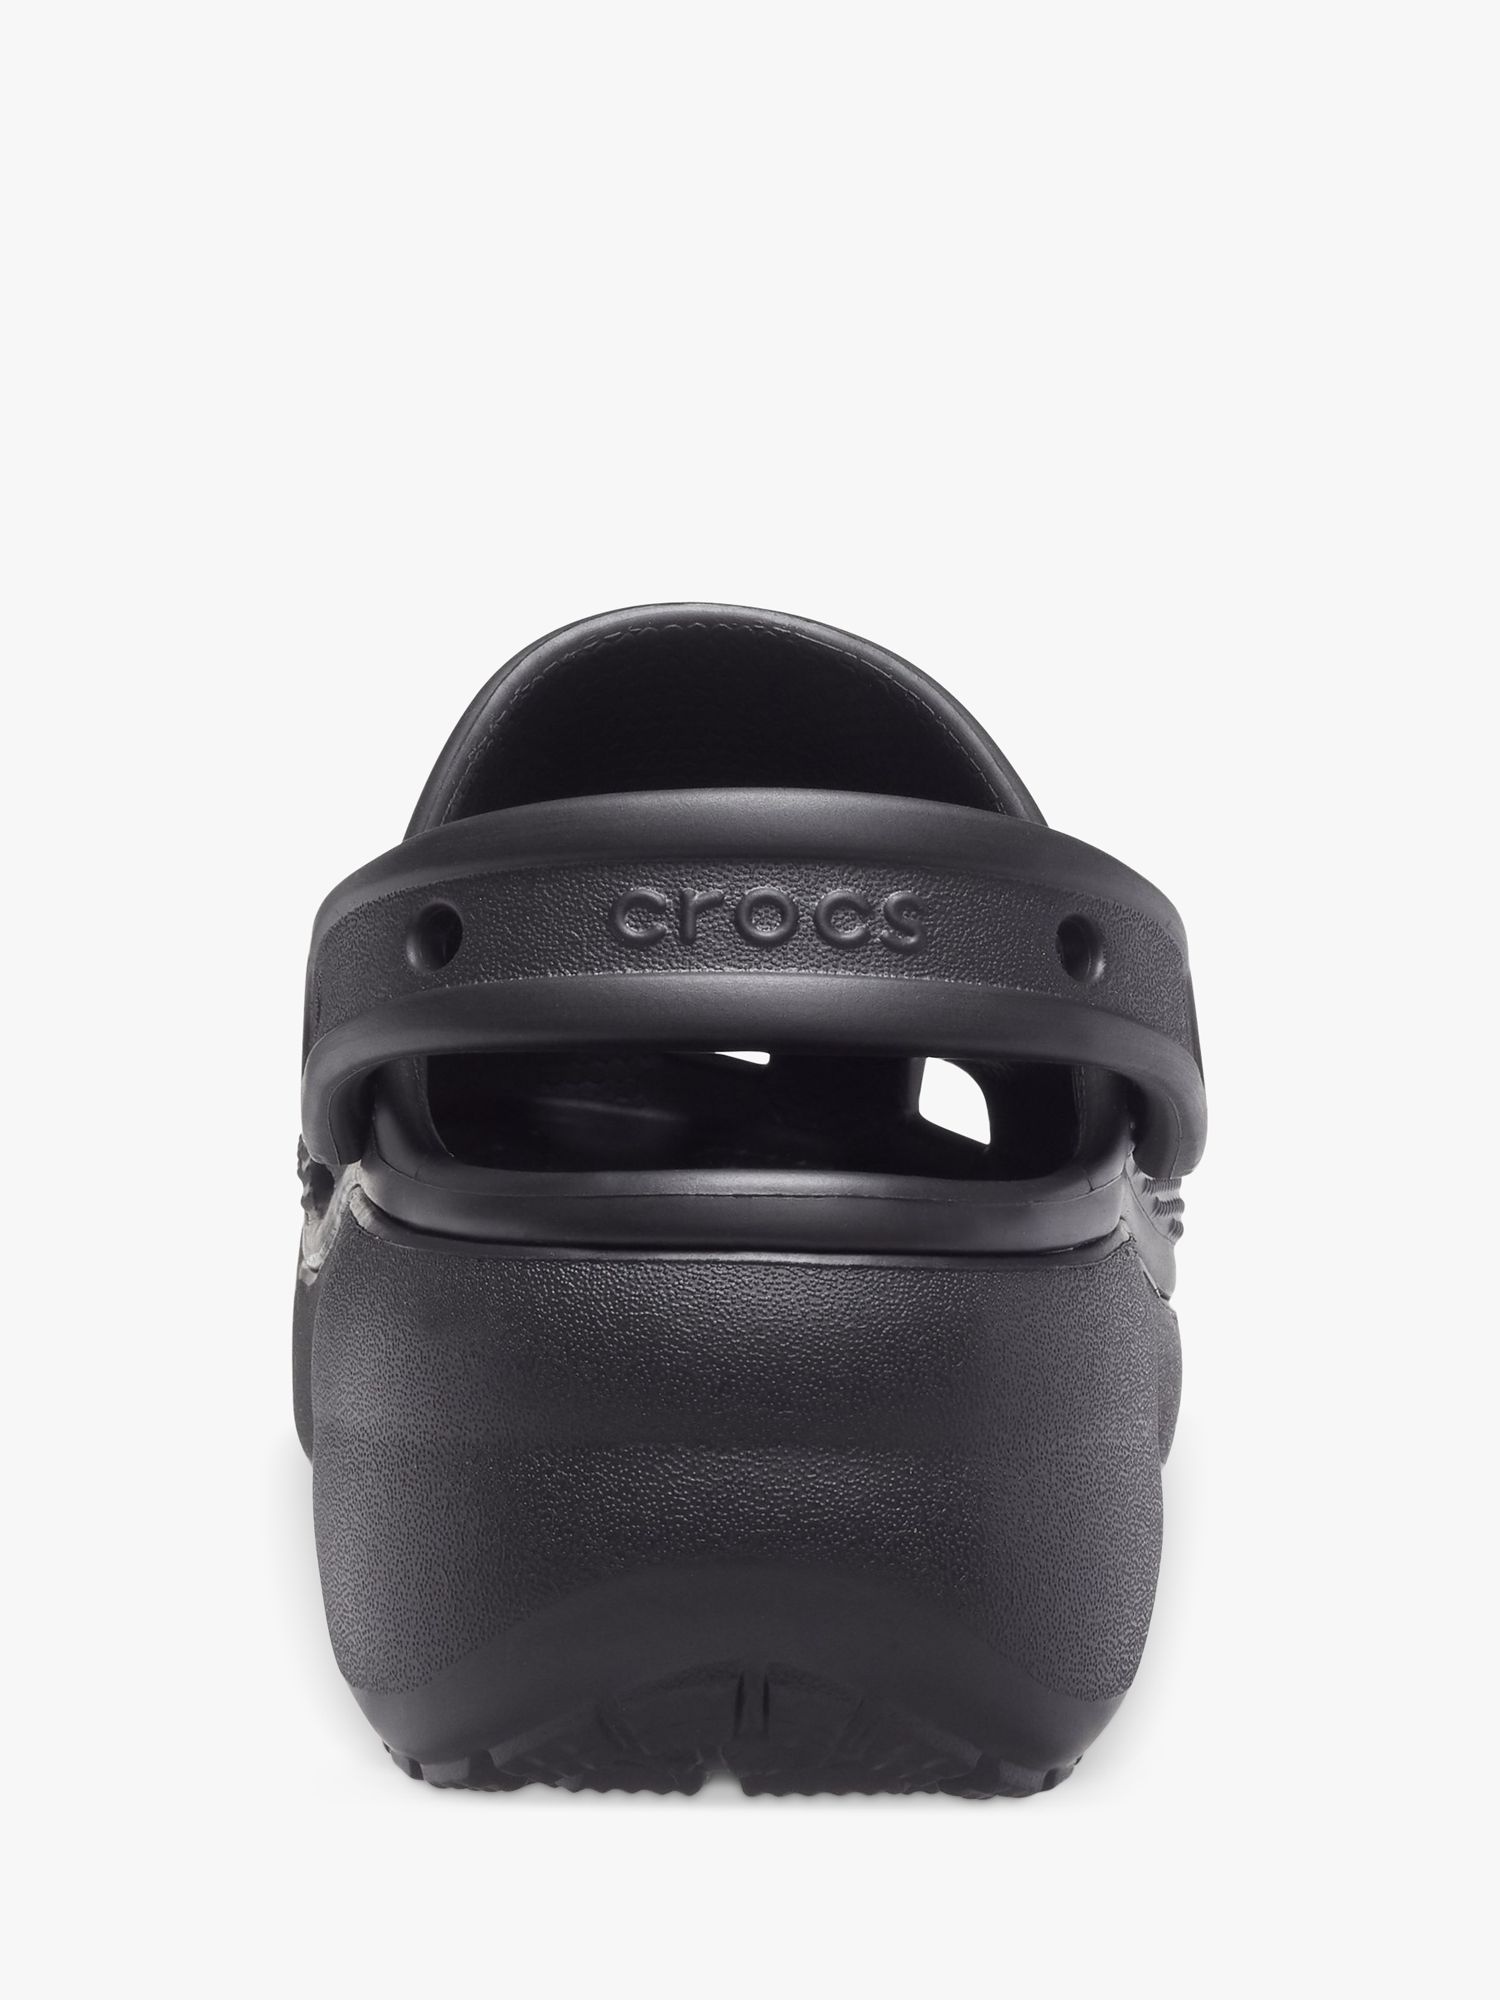 Crocs Classic Platform Clogs, Black, 3